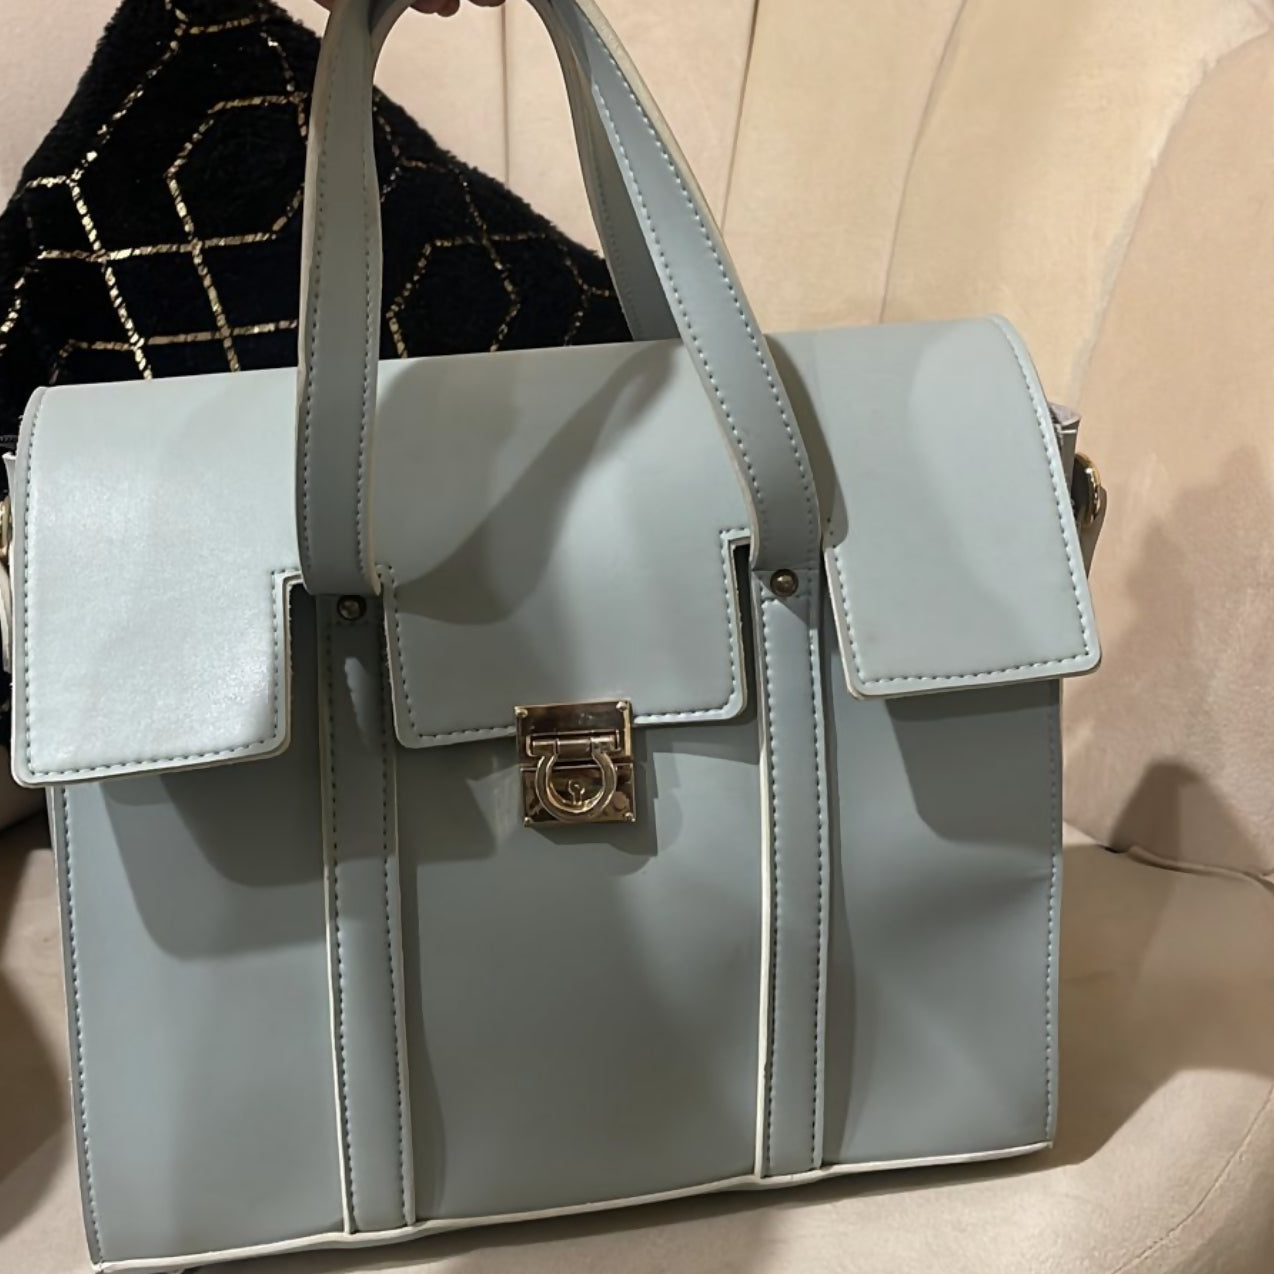 نیلے رنگ کے چمڑے کا بیگ (سائز: M ) | خواتین کے بیگ | نئی 